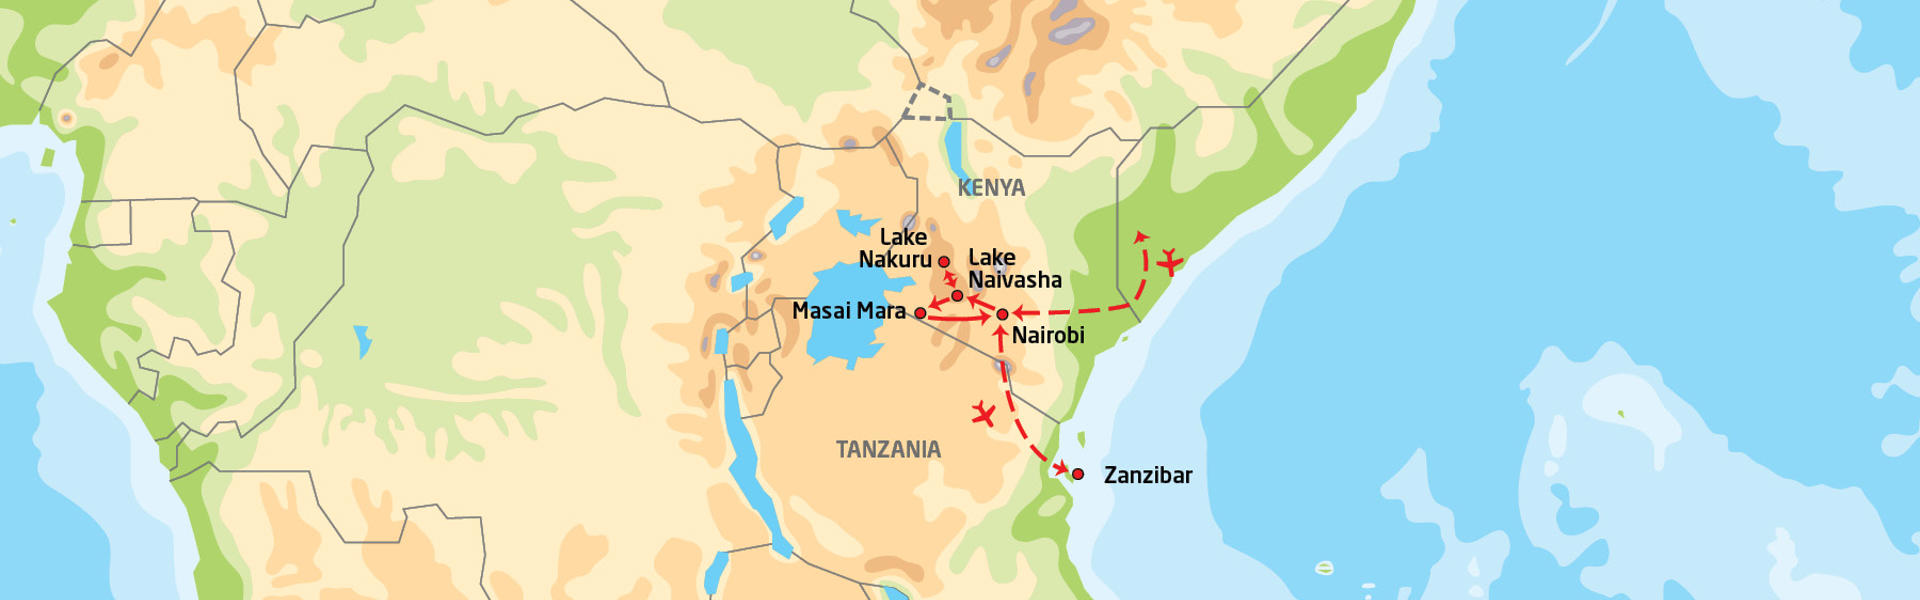 kenyas-klassiskehøydepunkter-badeferie-zanzibar